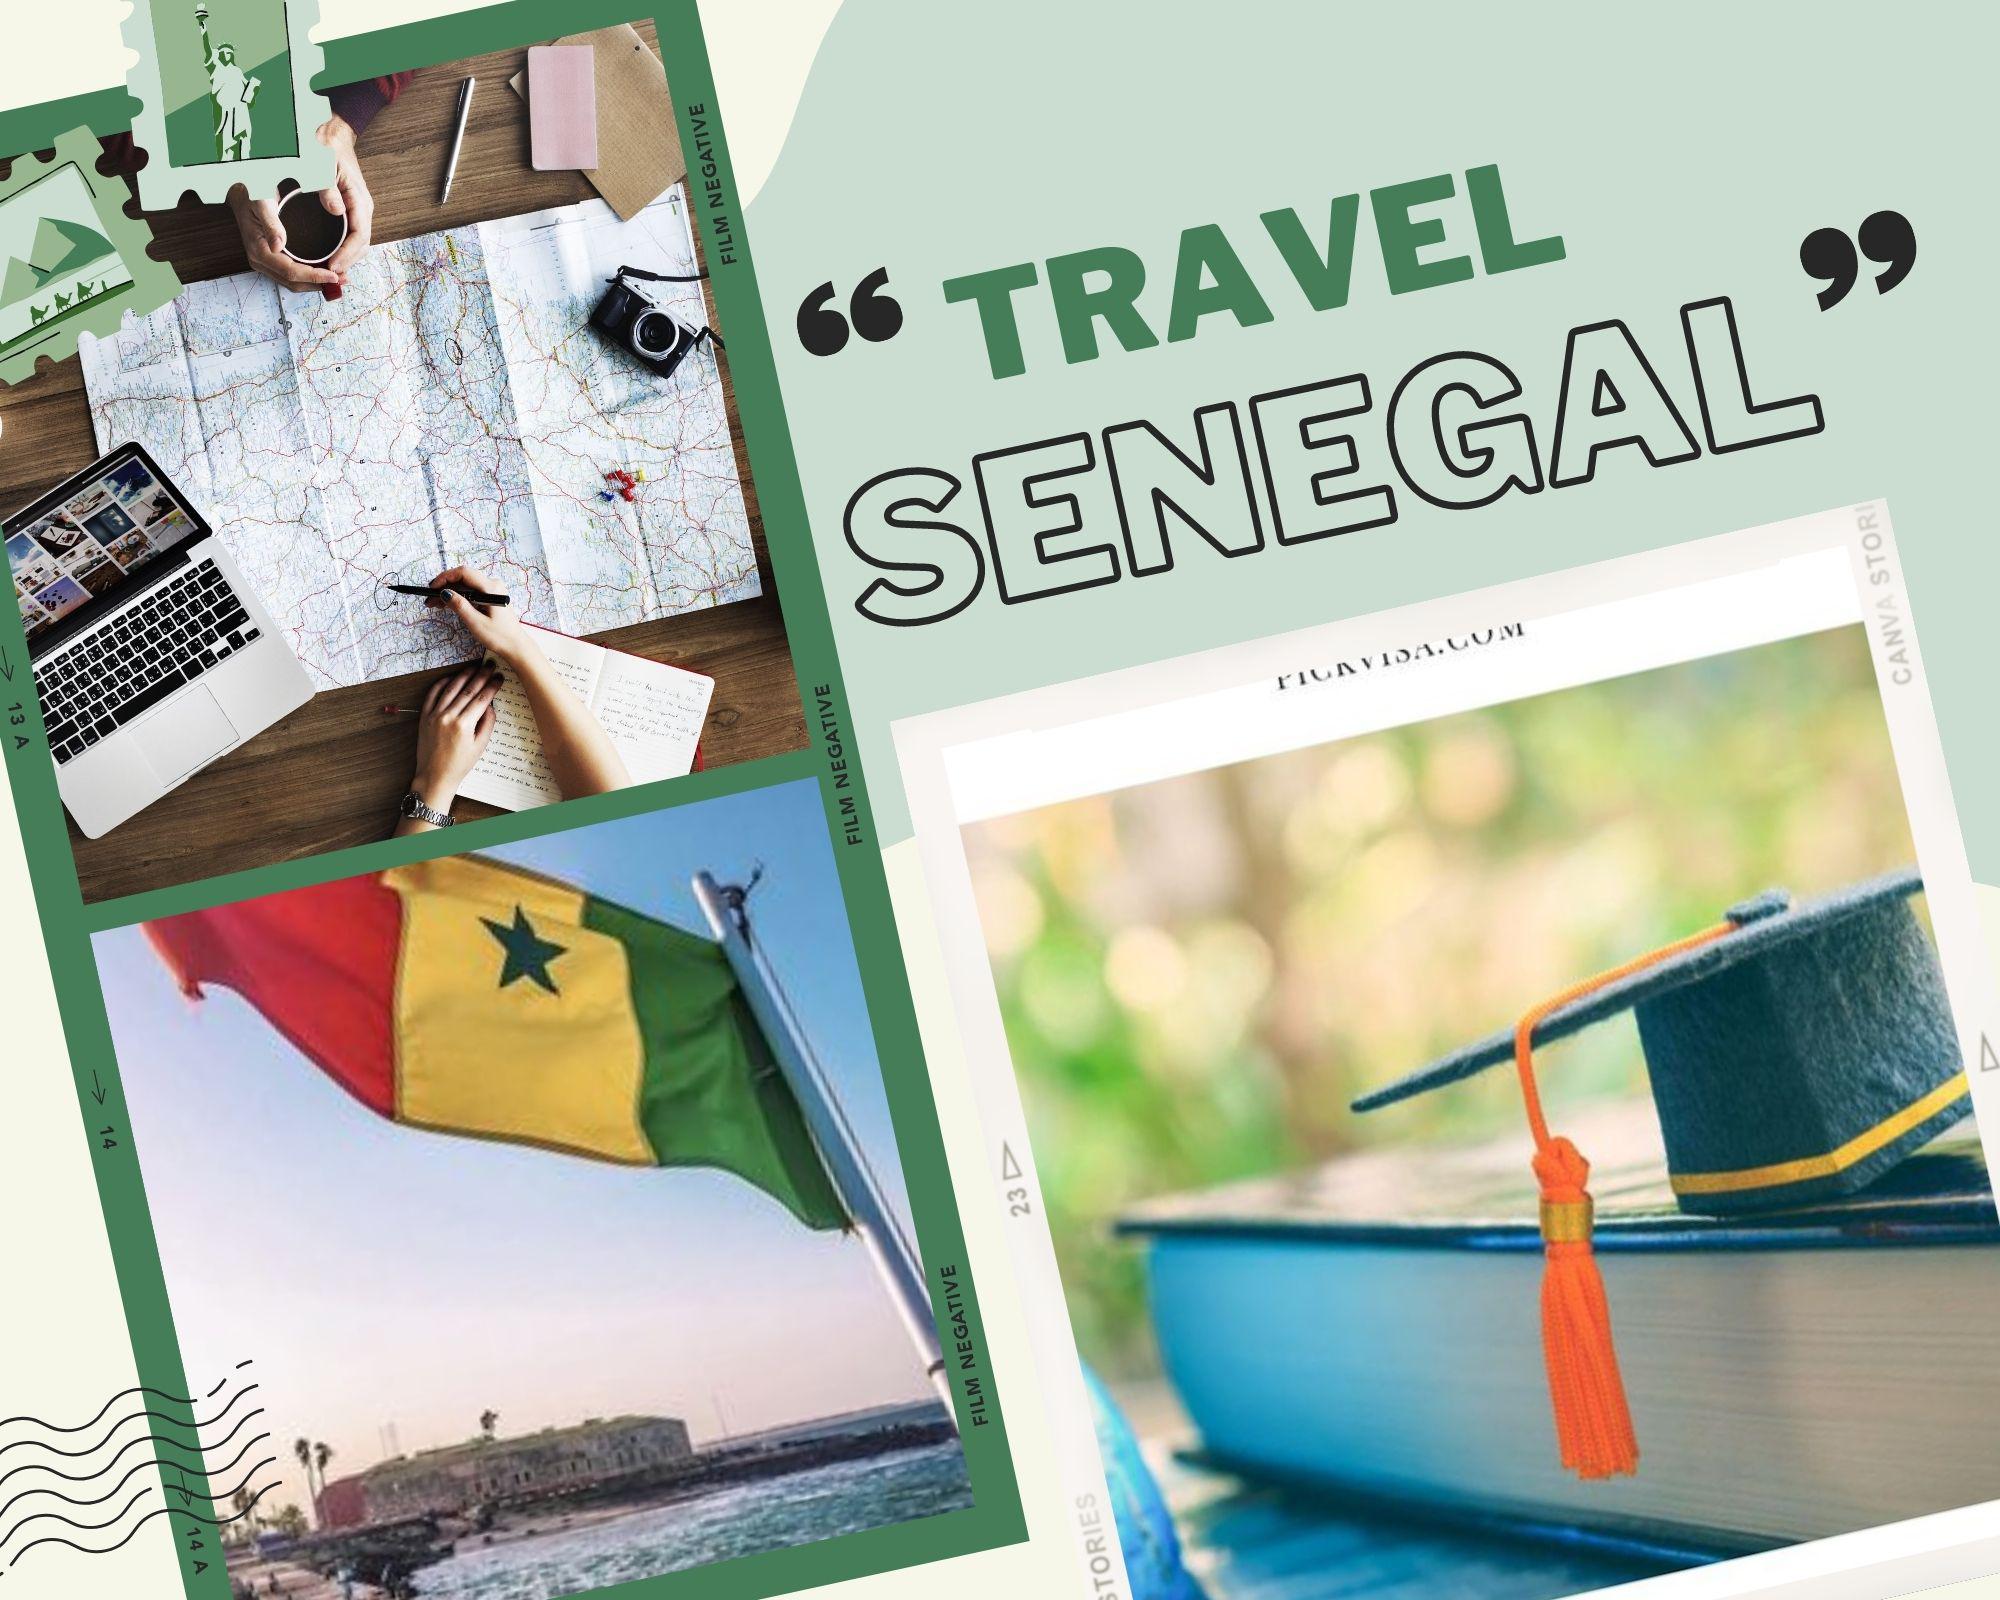 Thủ tục xin visa Senegal nhanh chóng